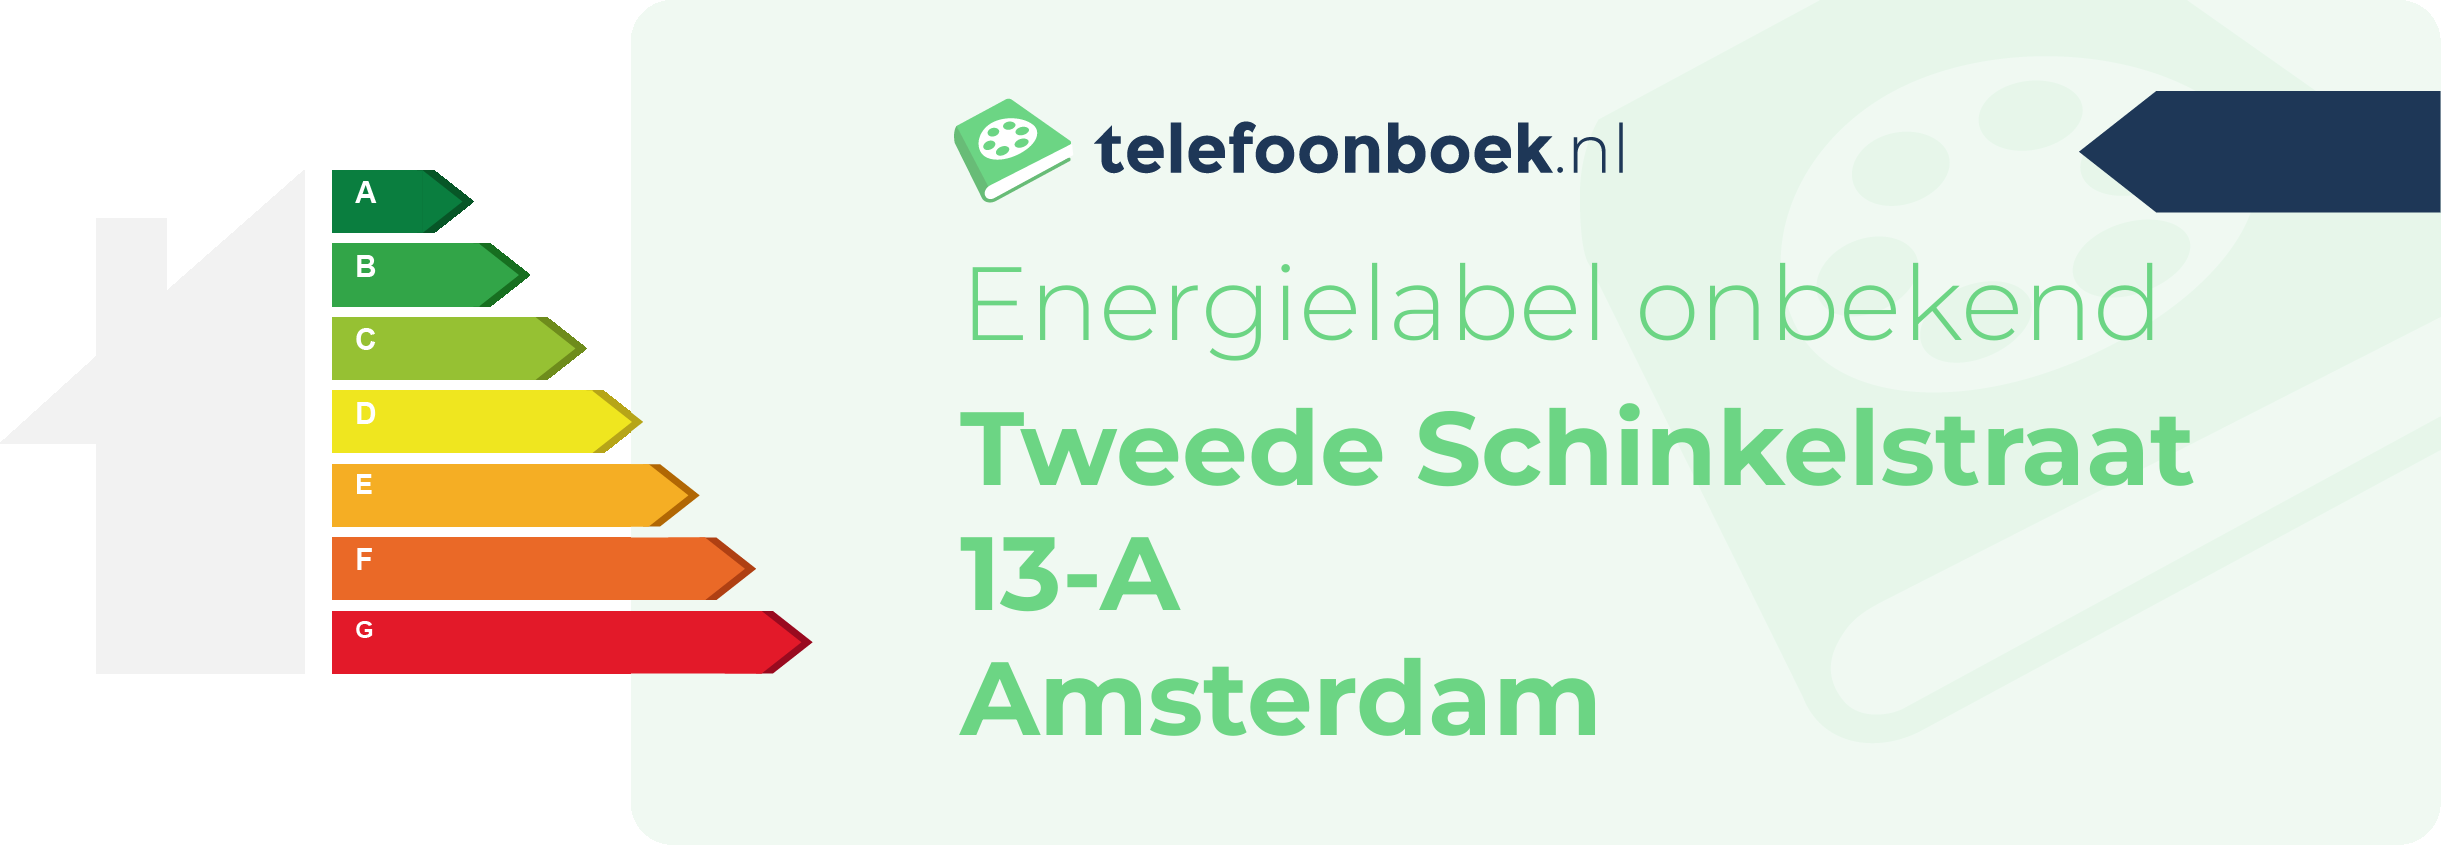 Energielabel Tweede Schinkelstraat 13-A Amsterdam